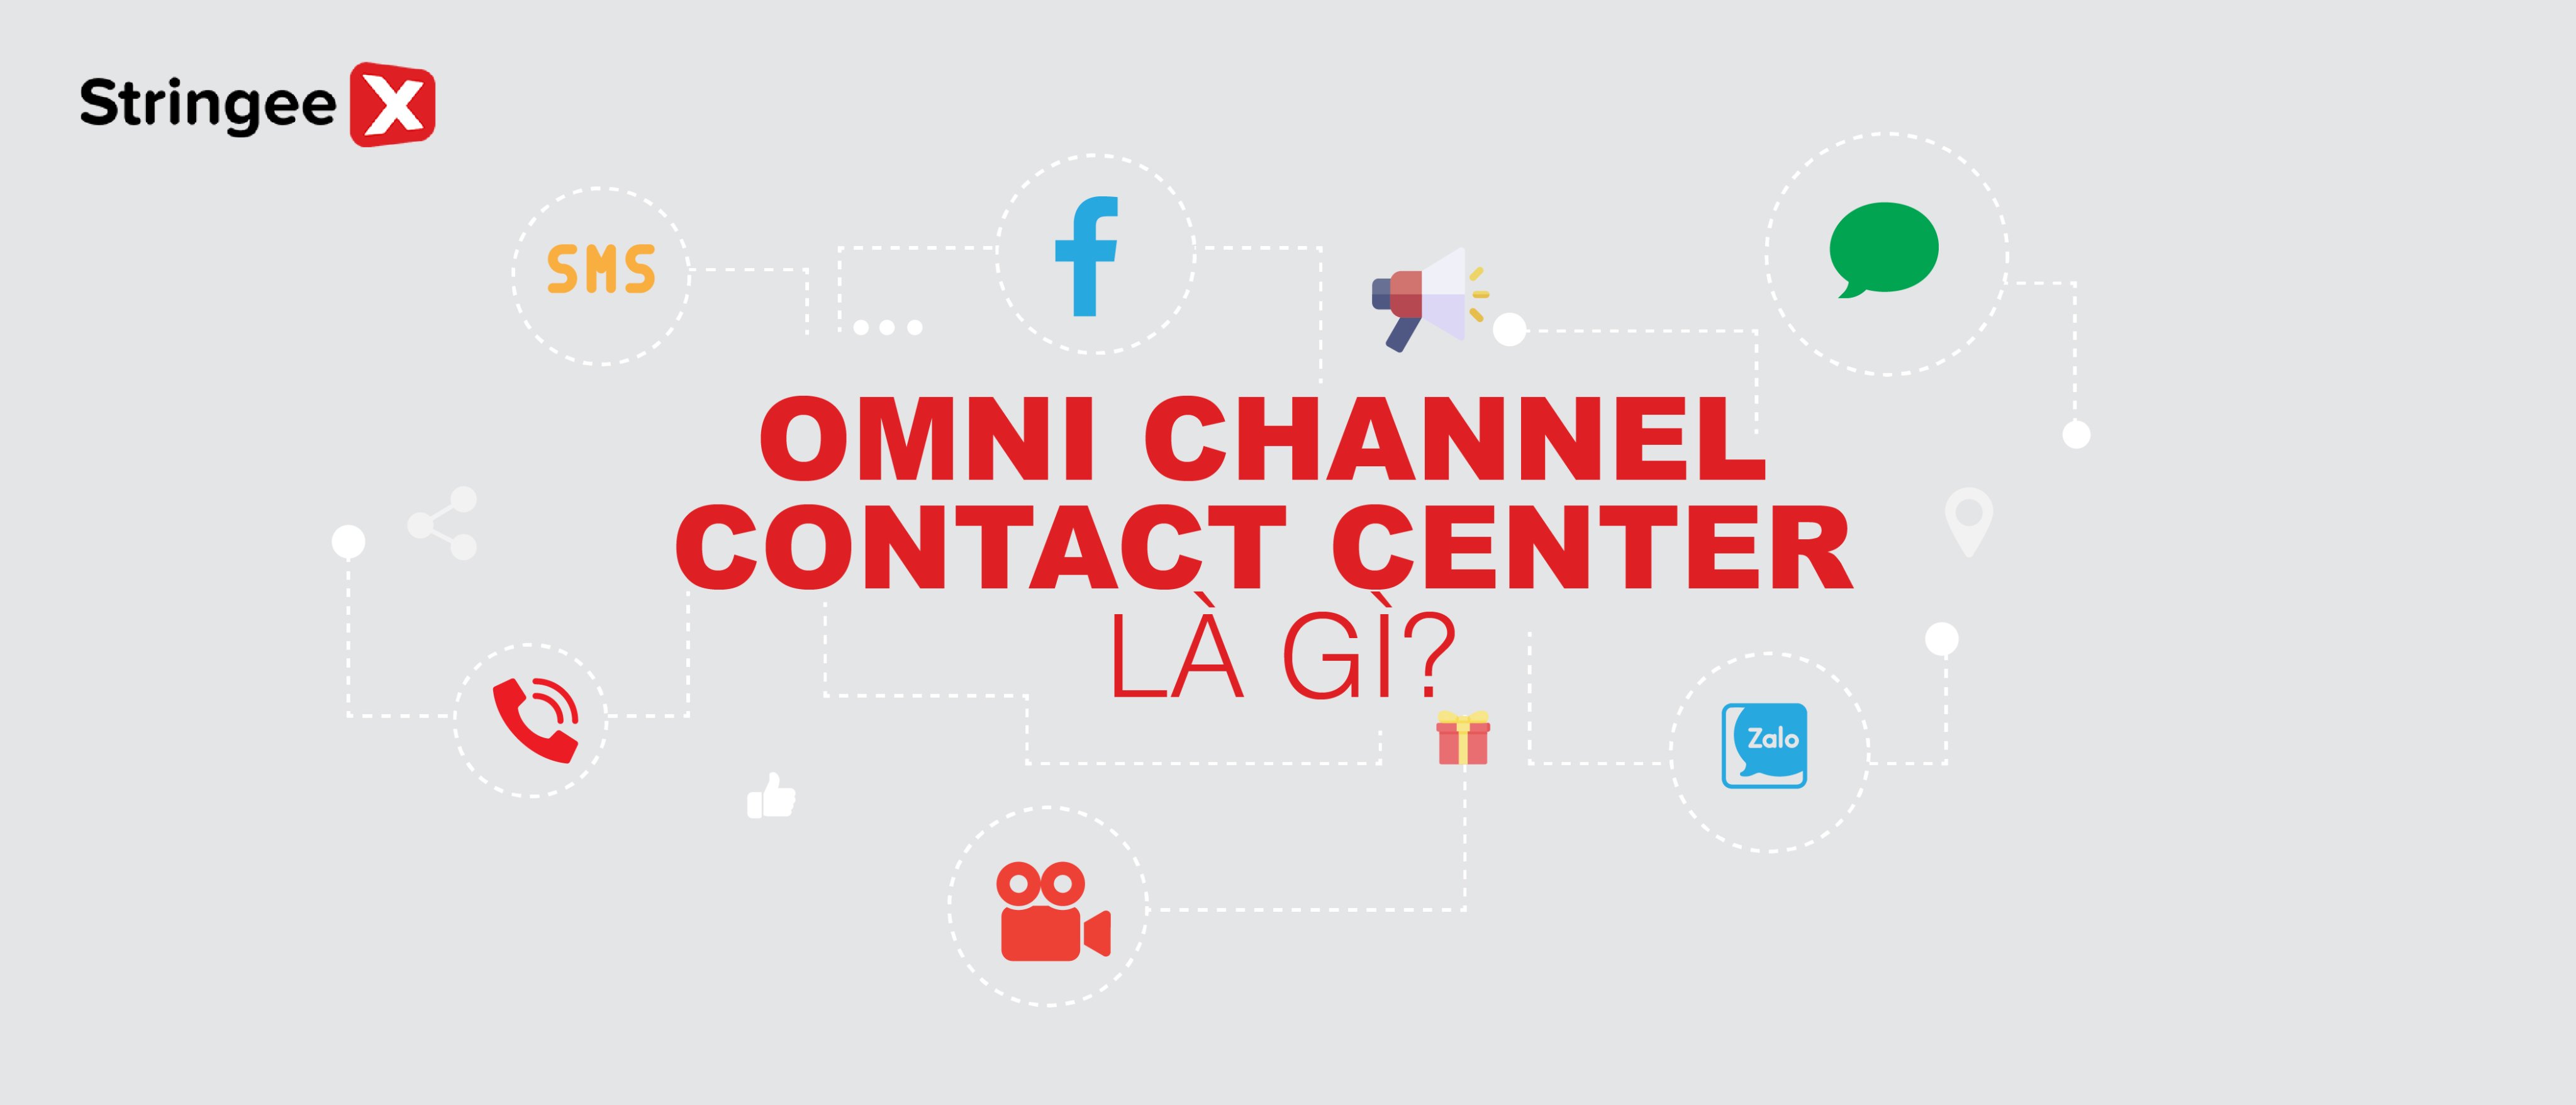 Omnichannel contact center là gì? Hướng dẫn chi tiết cách lựa chọn cho doanh nghiệp vừa và nhỏ.